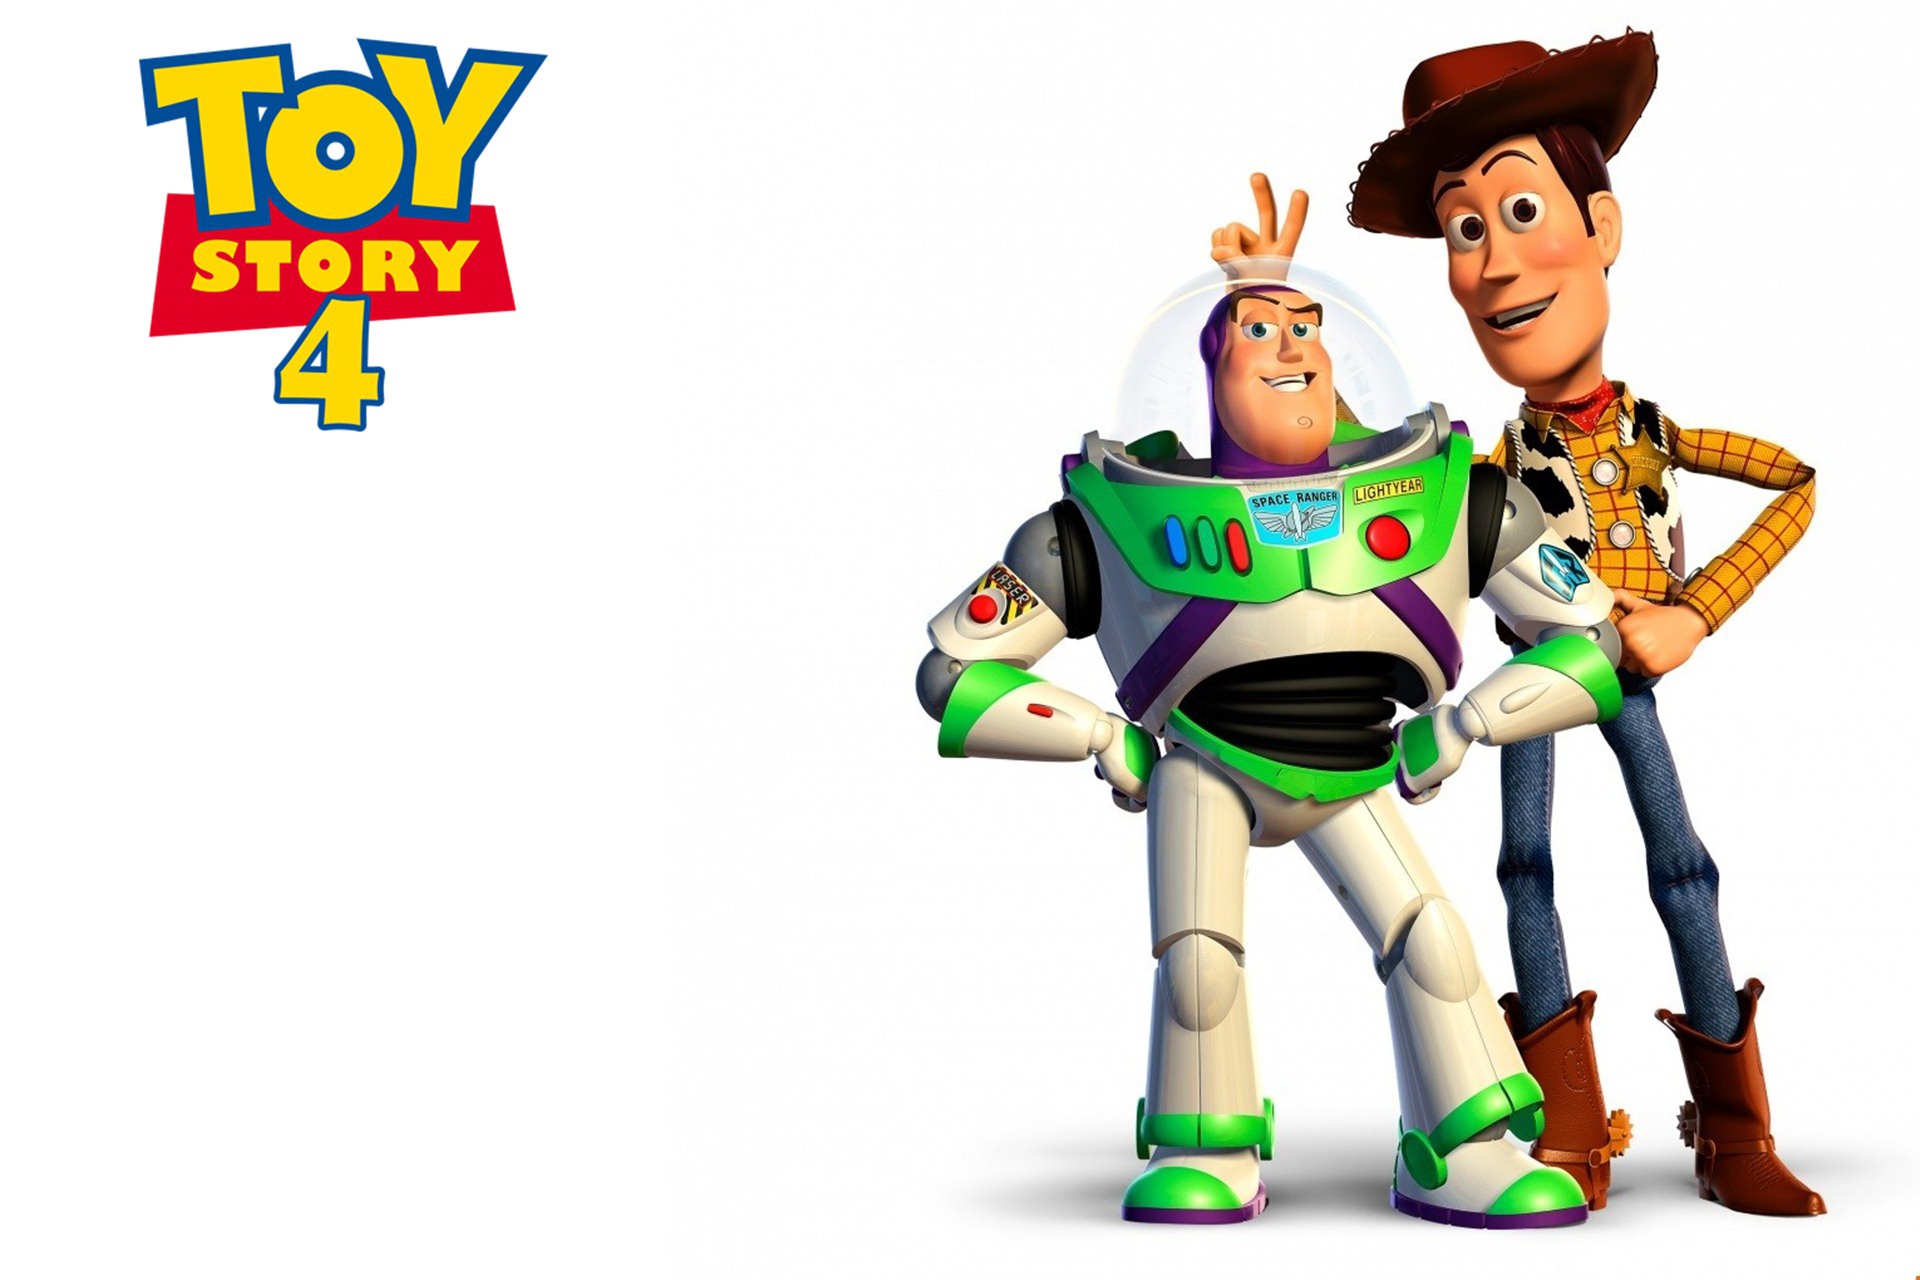 Toy Story 4, ilk haftasında gişeyi domine etti